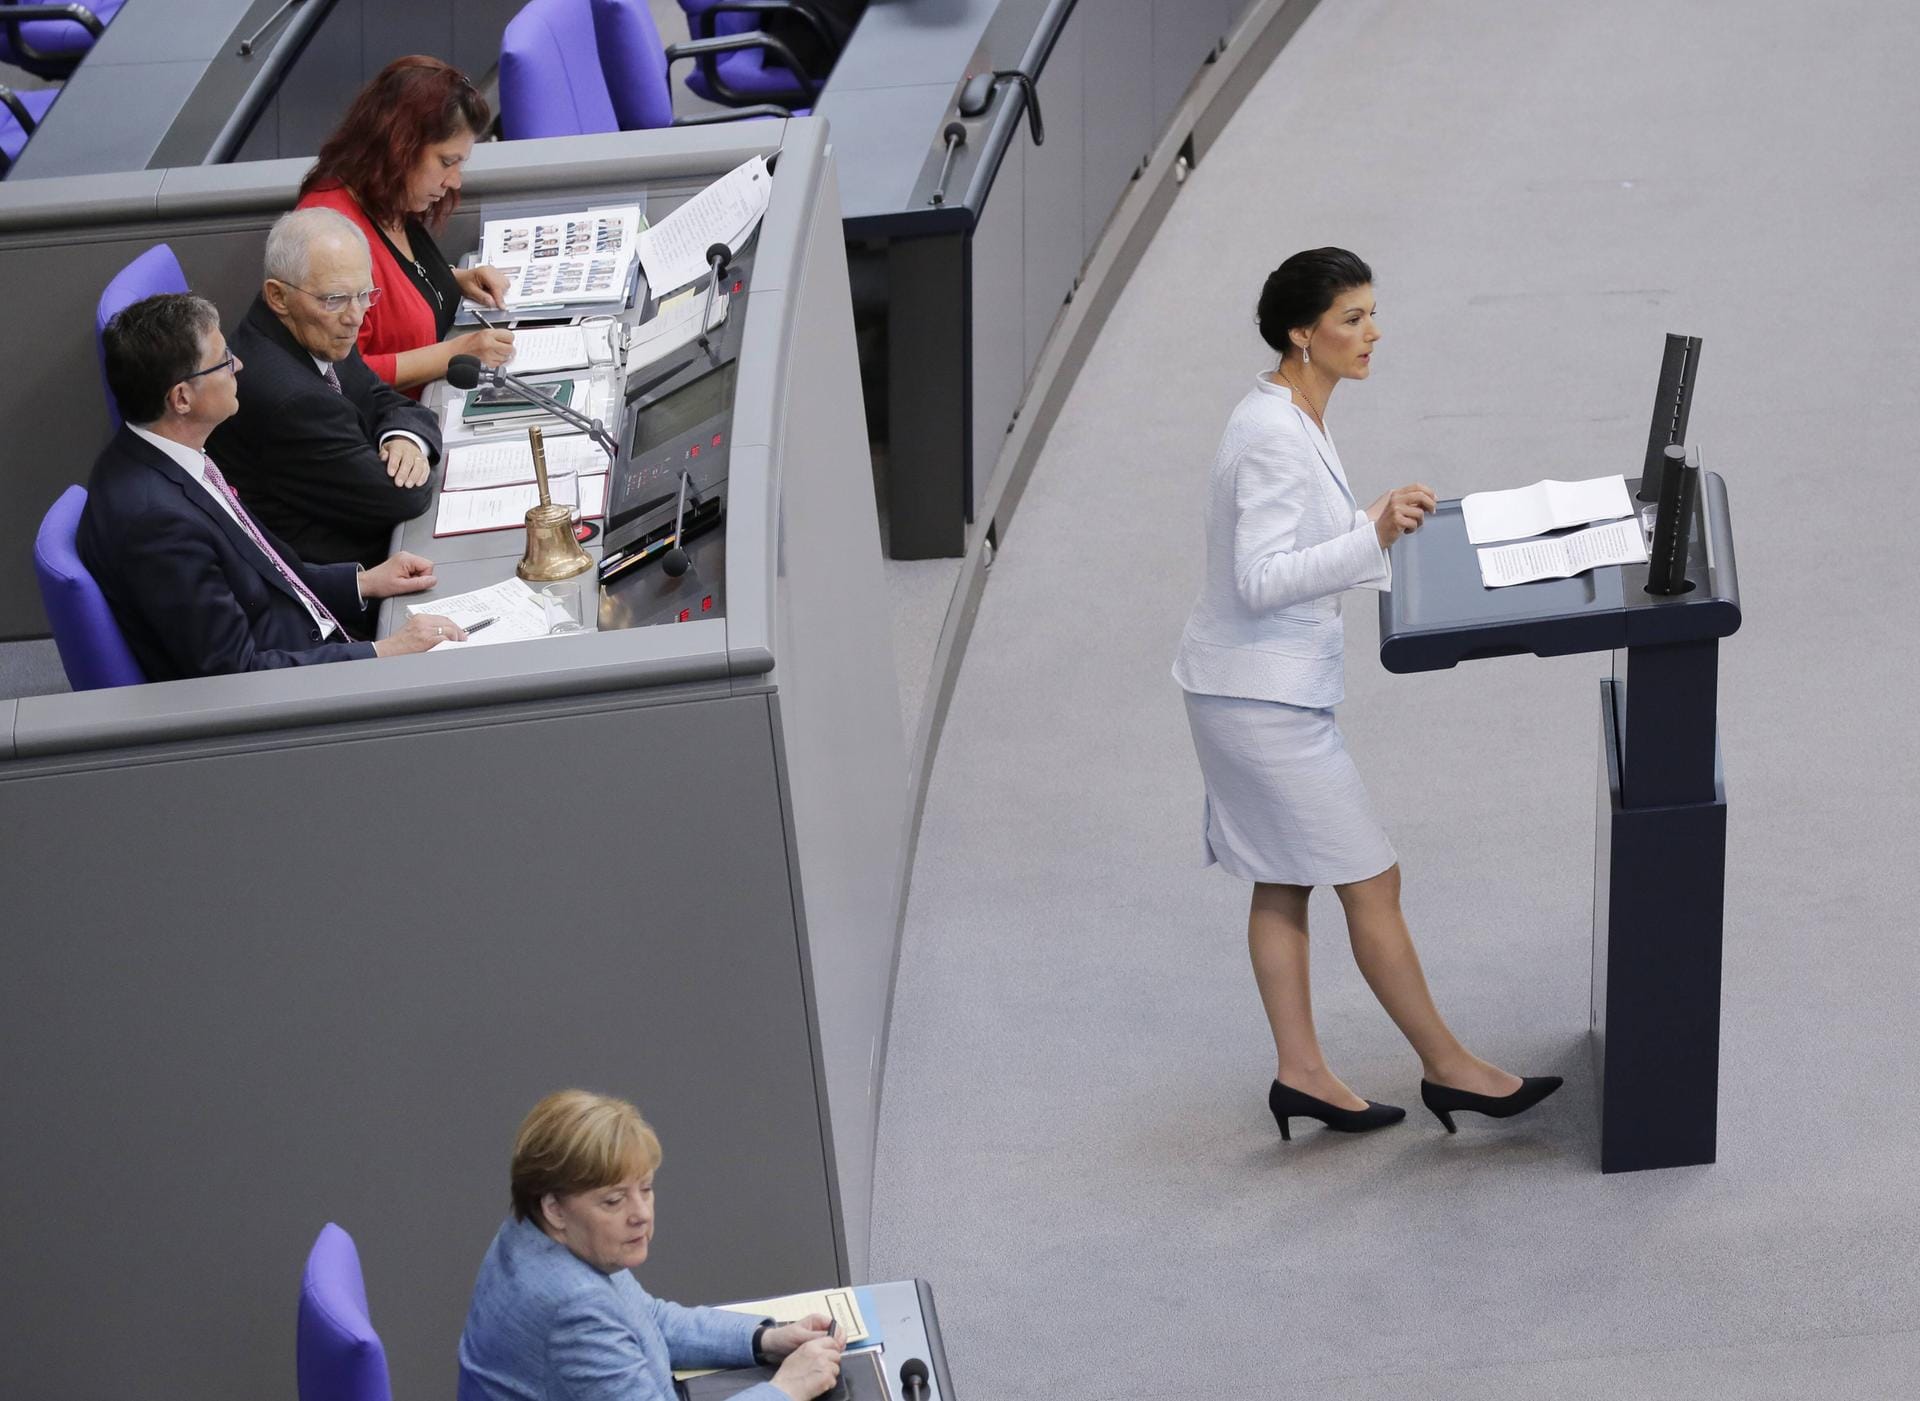 Seit 2009 ist Sahra Wagenknecht im Bundestag. Im Herbst 2015 löste sie zusammen mit Dietmar Bartsch Gregor Gyis als Franktionsspitze der Linken ab. Nun will die 49-Jährige nicht erneut für das Amt kandidieren.